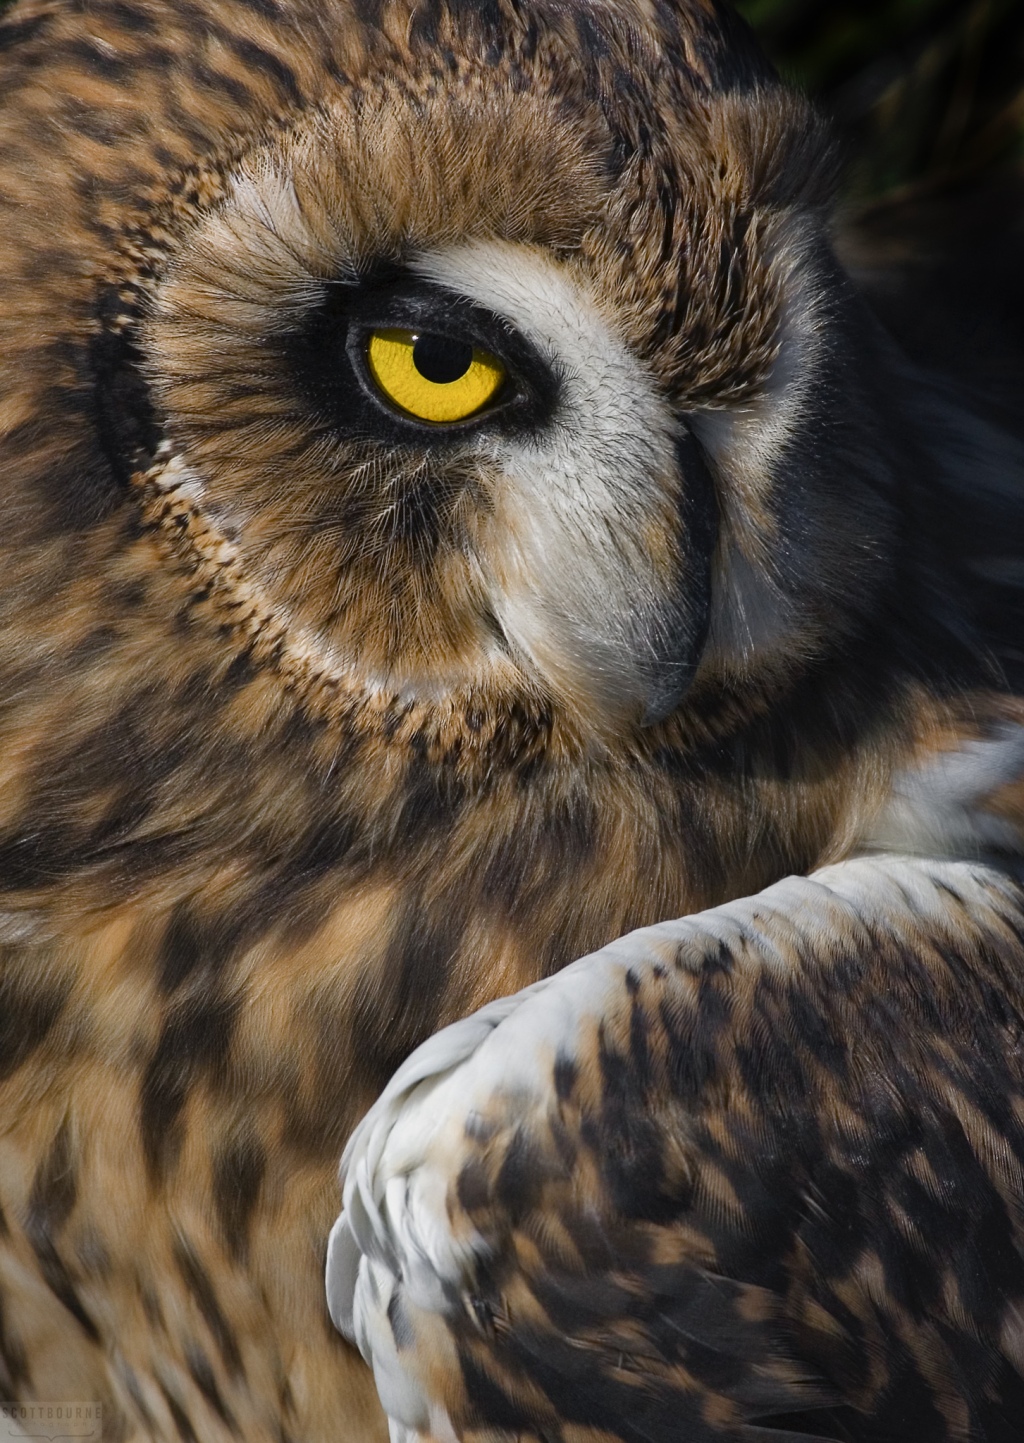 Owl Photo by Scott Bourne